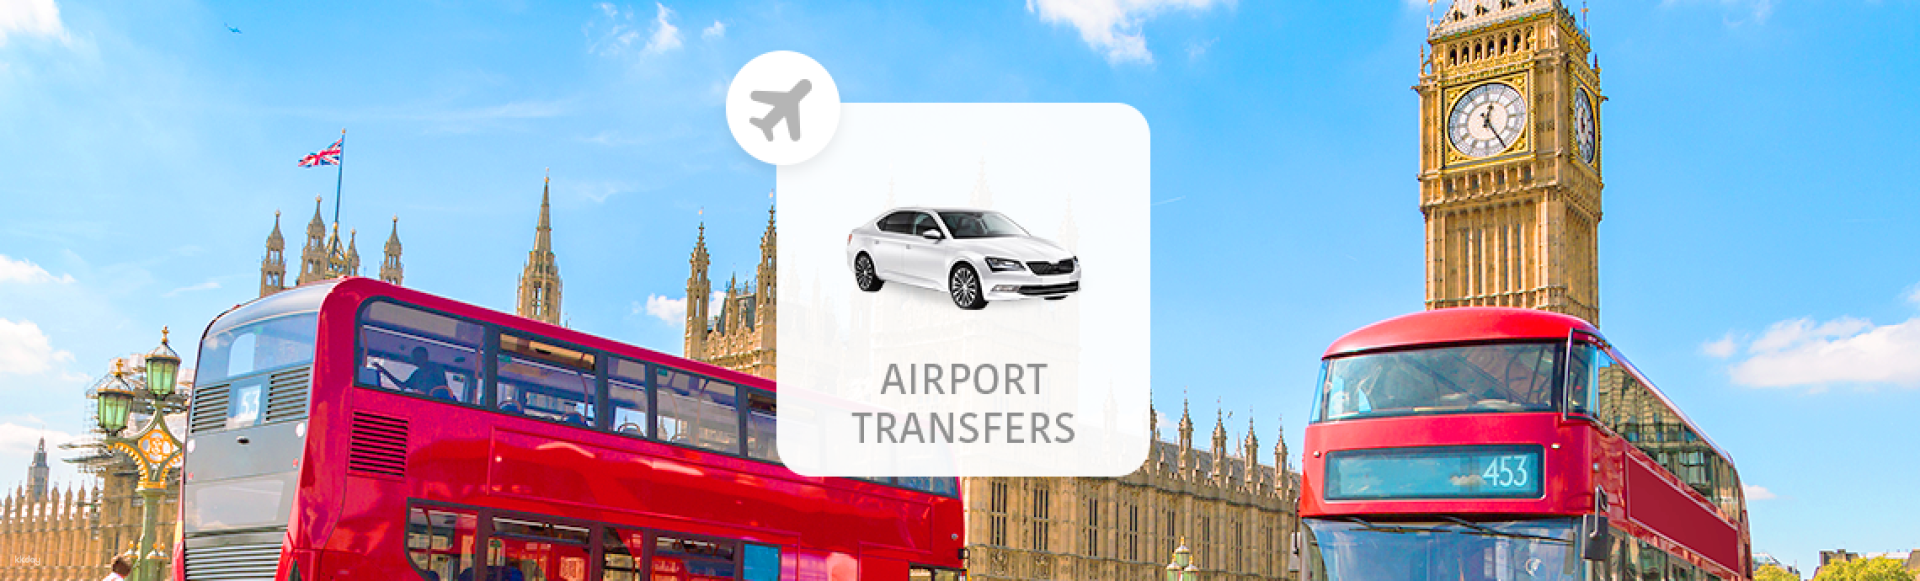 英國-倫敦希斯洛機場(LHR)往返倫敦市區(含接機舉牌服務)| 機場接送專車